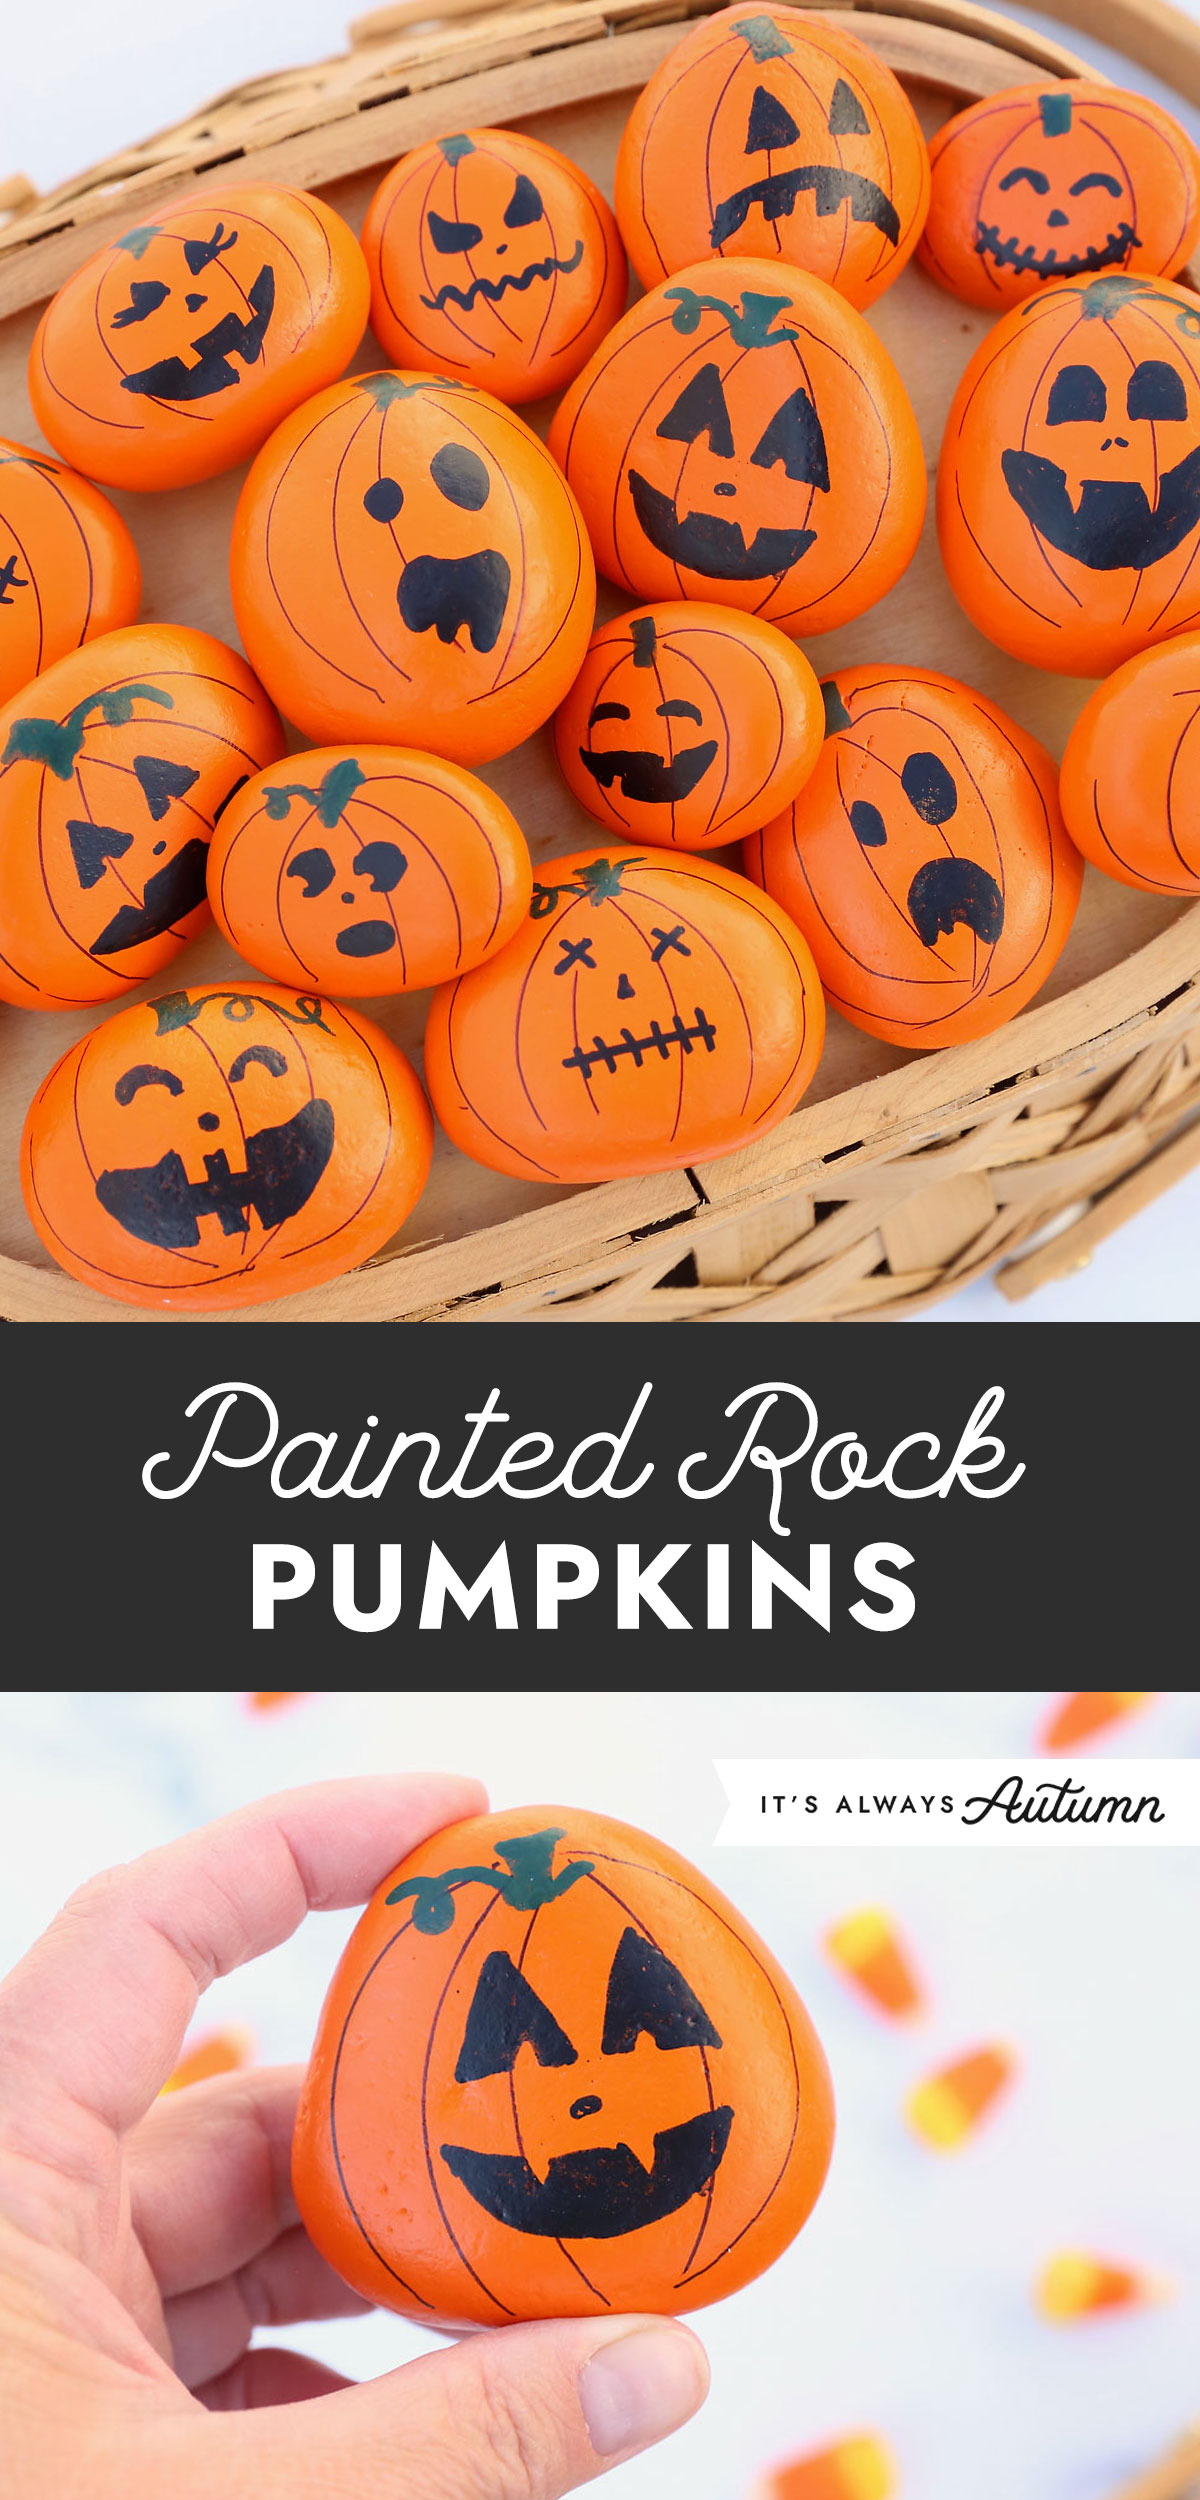 Painted rock pumpkins